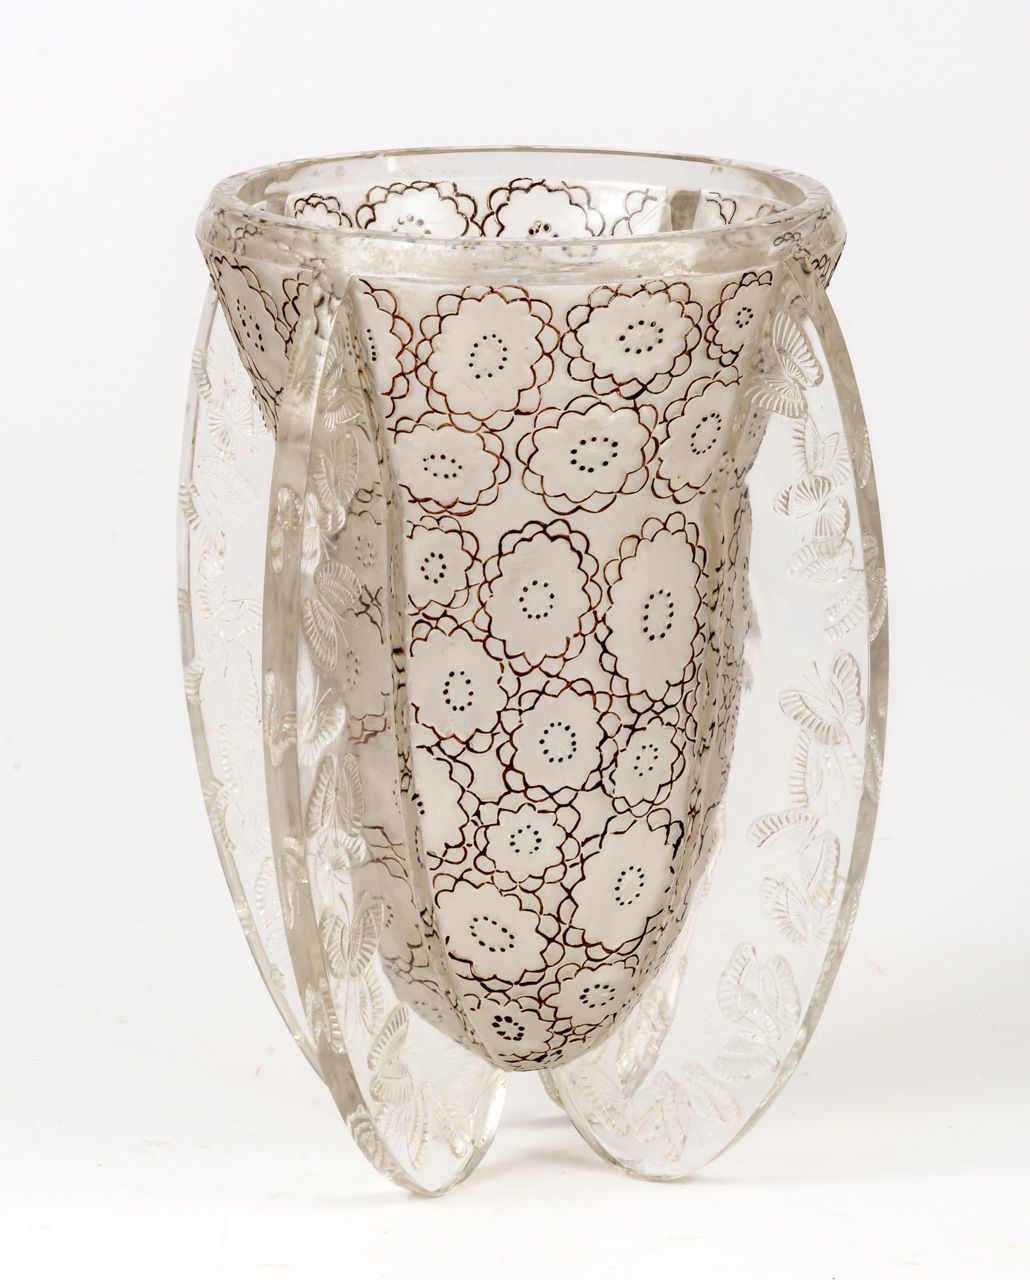 SELTENE PAPILLONS VASE VON LALIQUE Glass, marked "LALIQUE FRANCE".

H: 22,5 cm